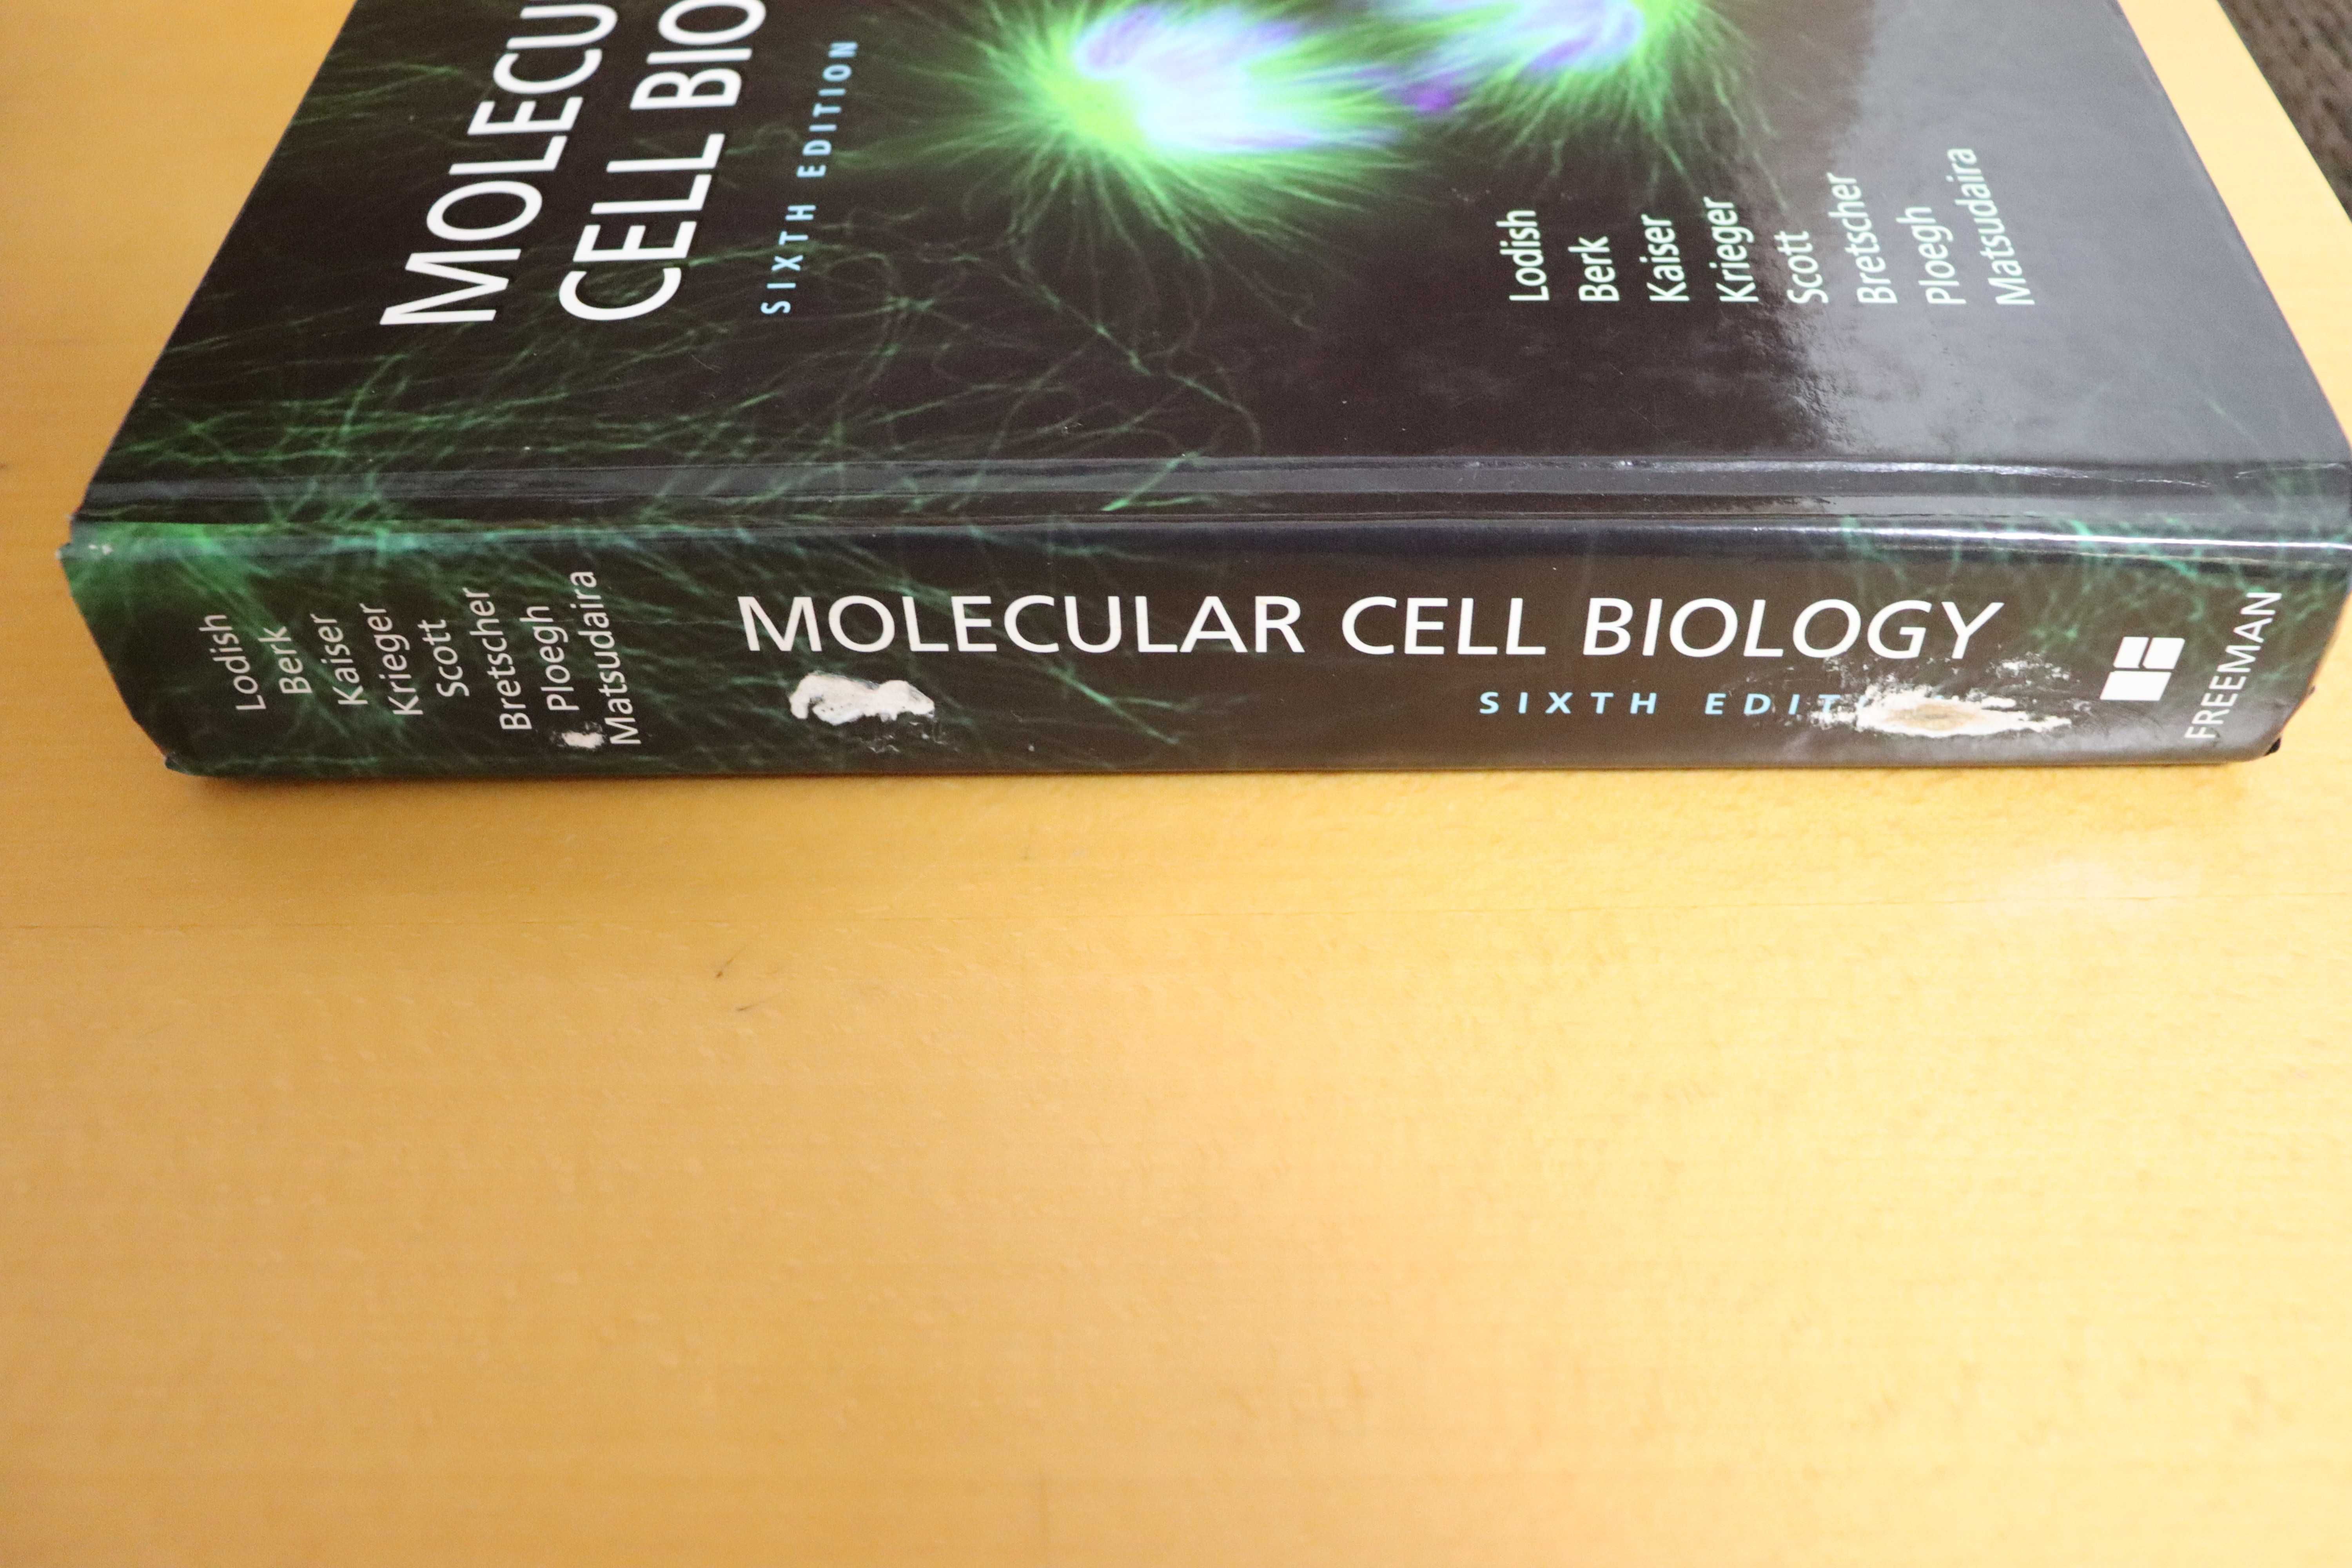 Molecular Cell Biology - Como Novo!